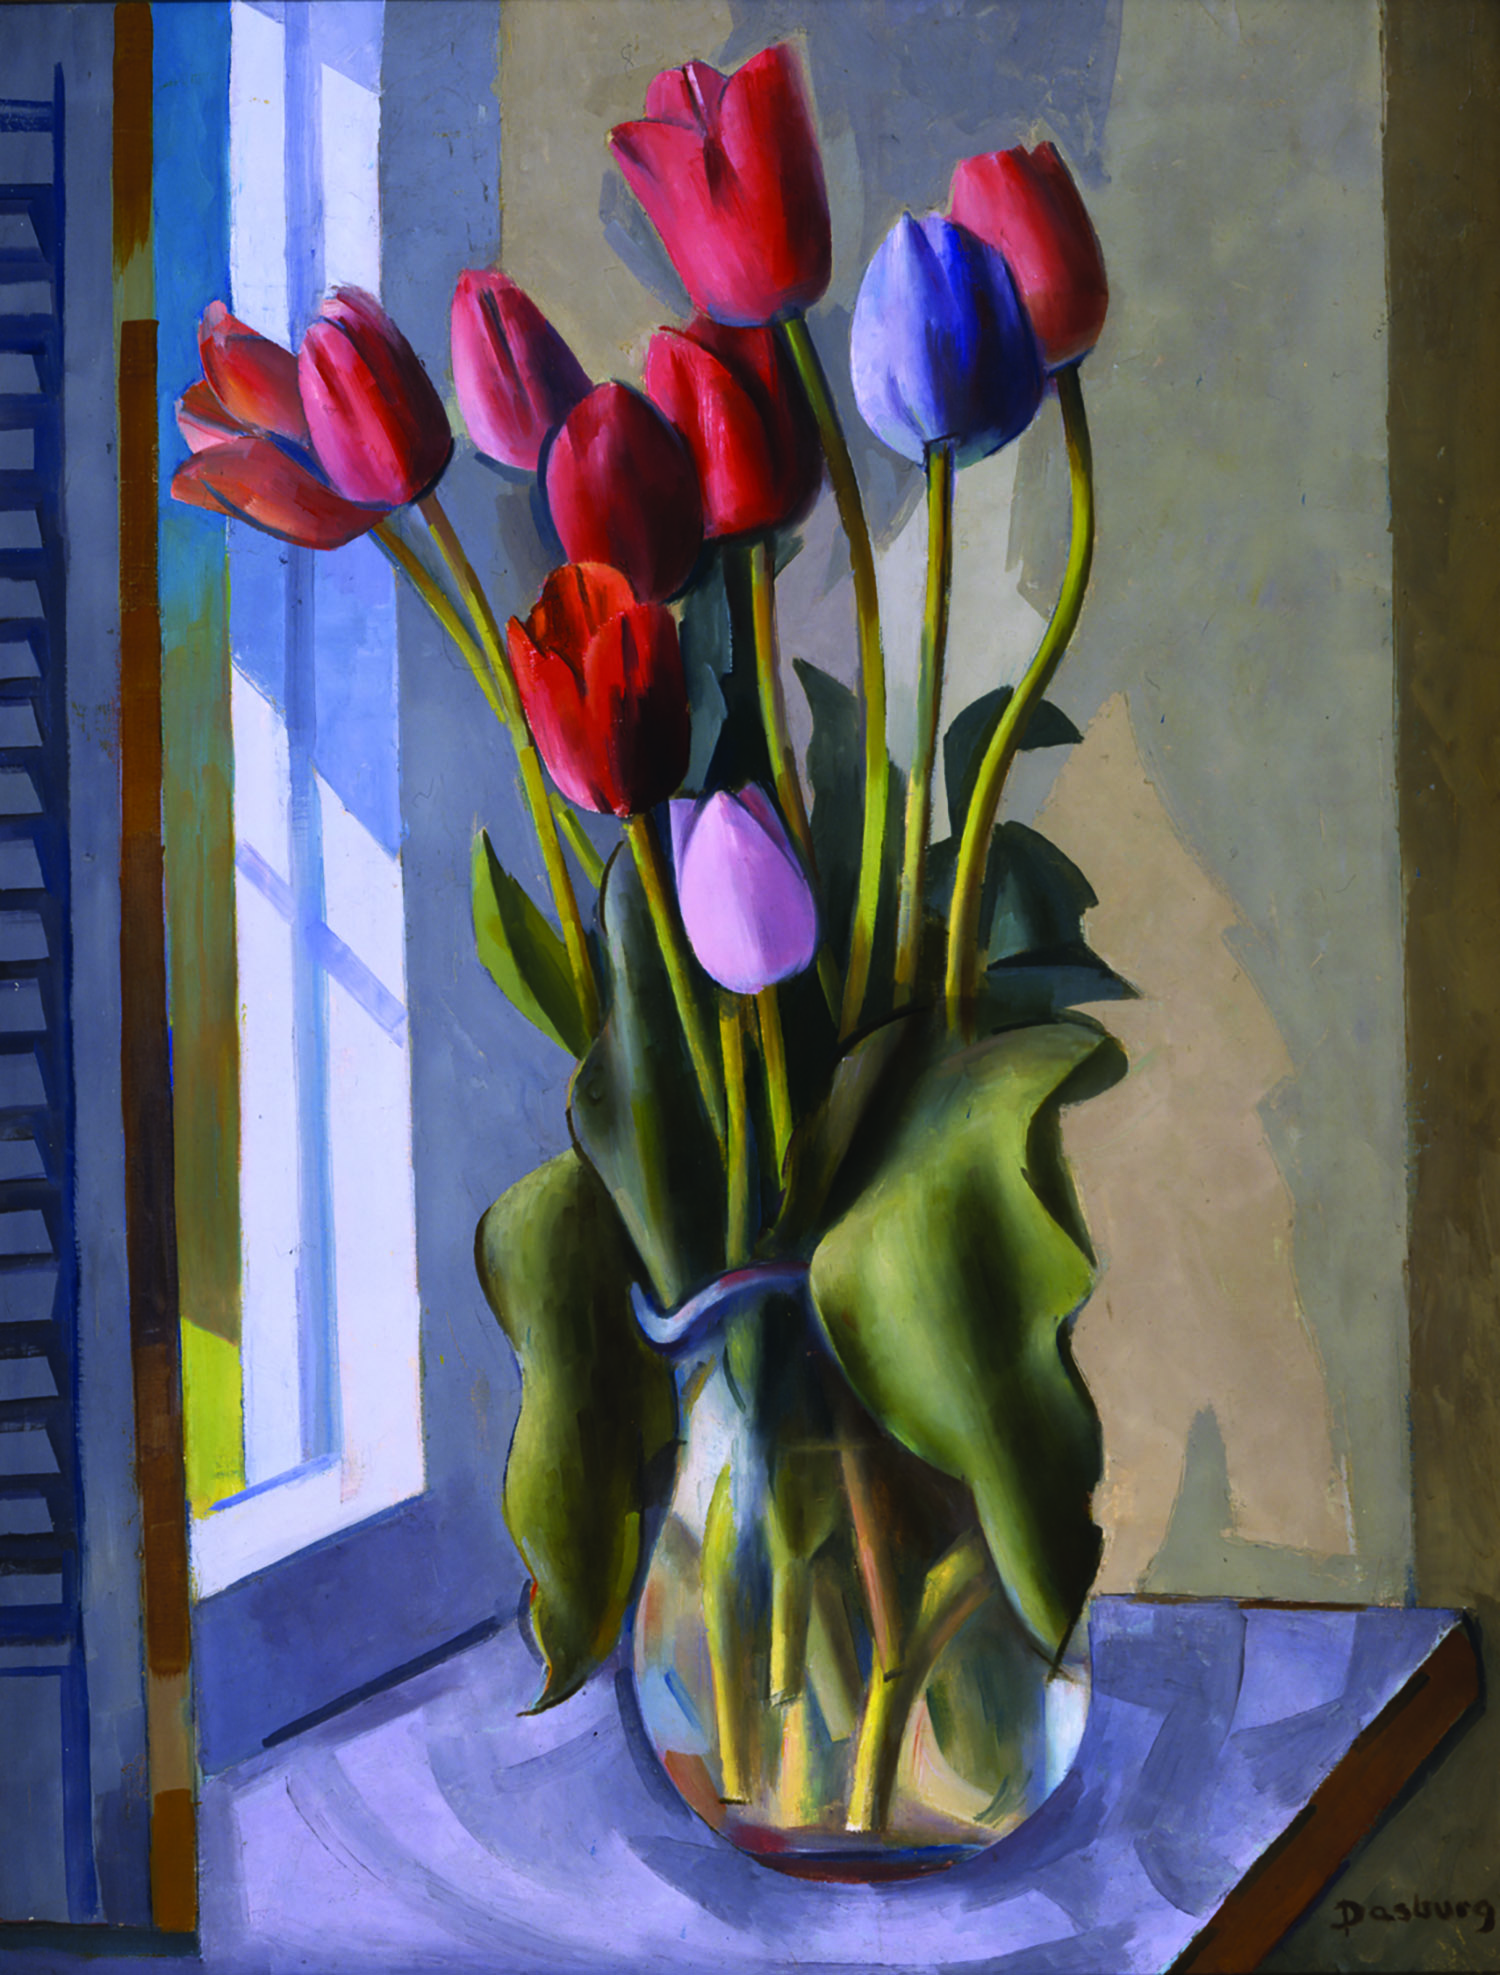 ART Andrew Dasburg, Red Tulips